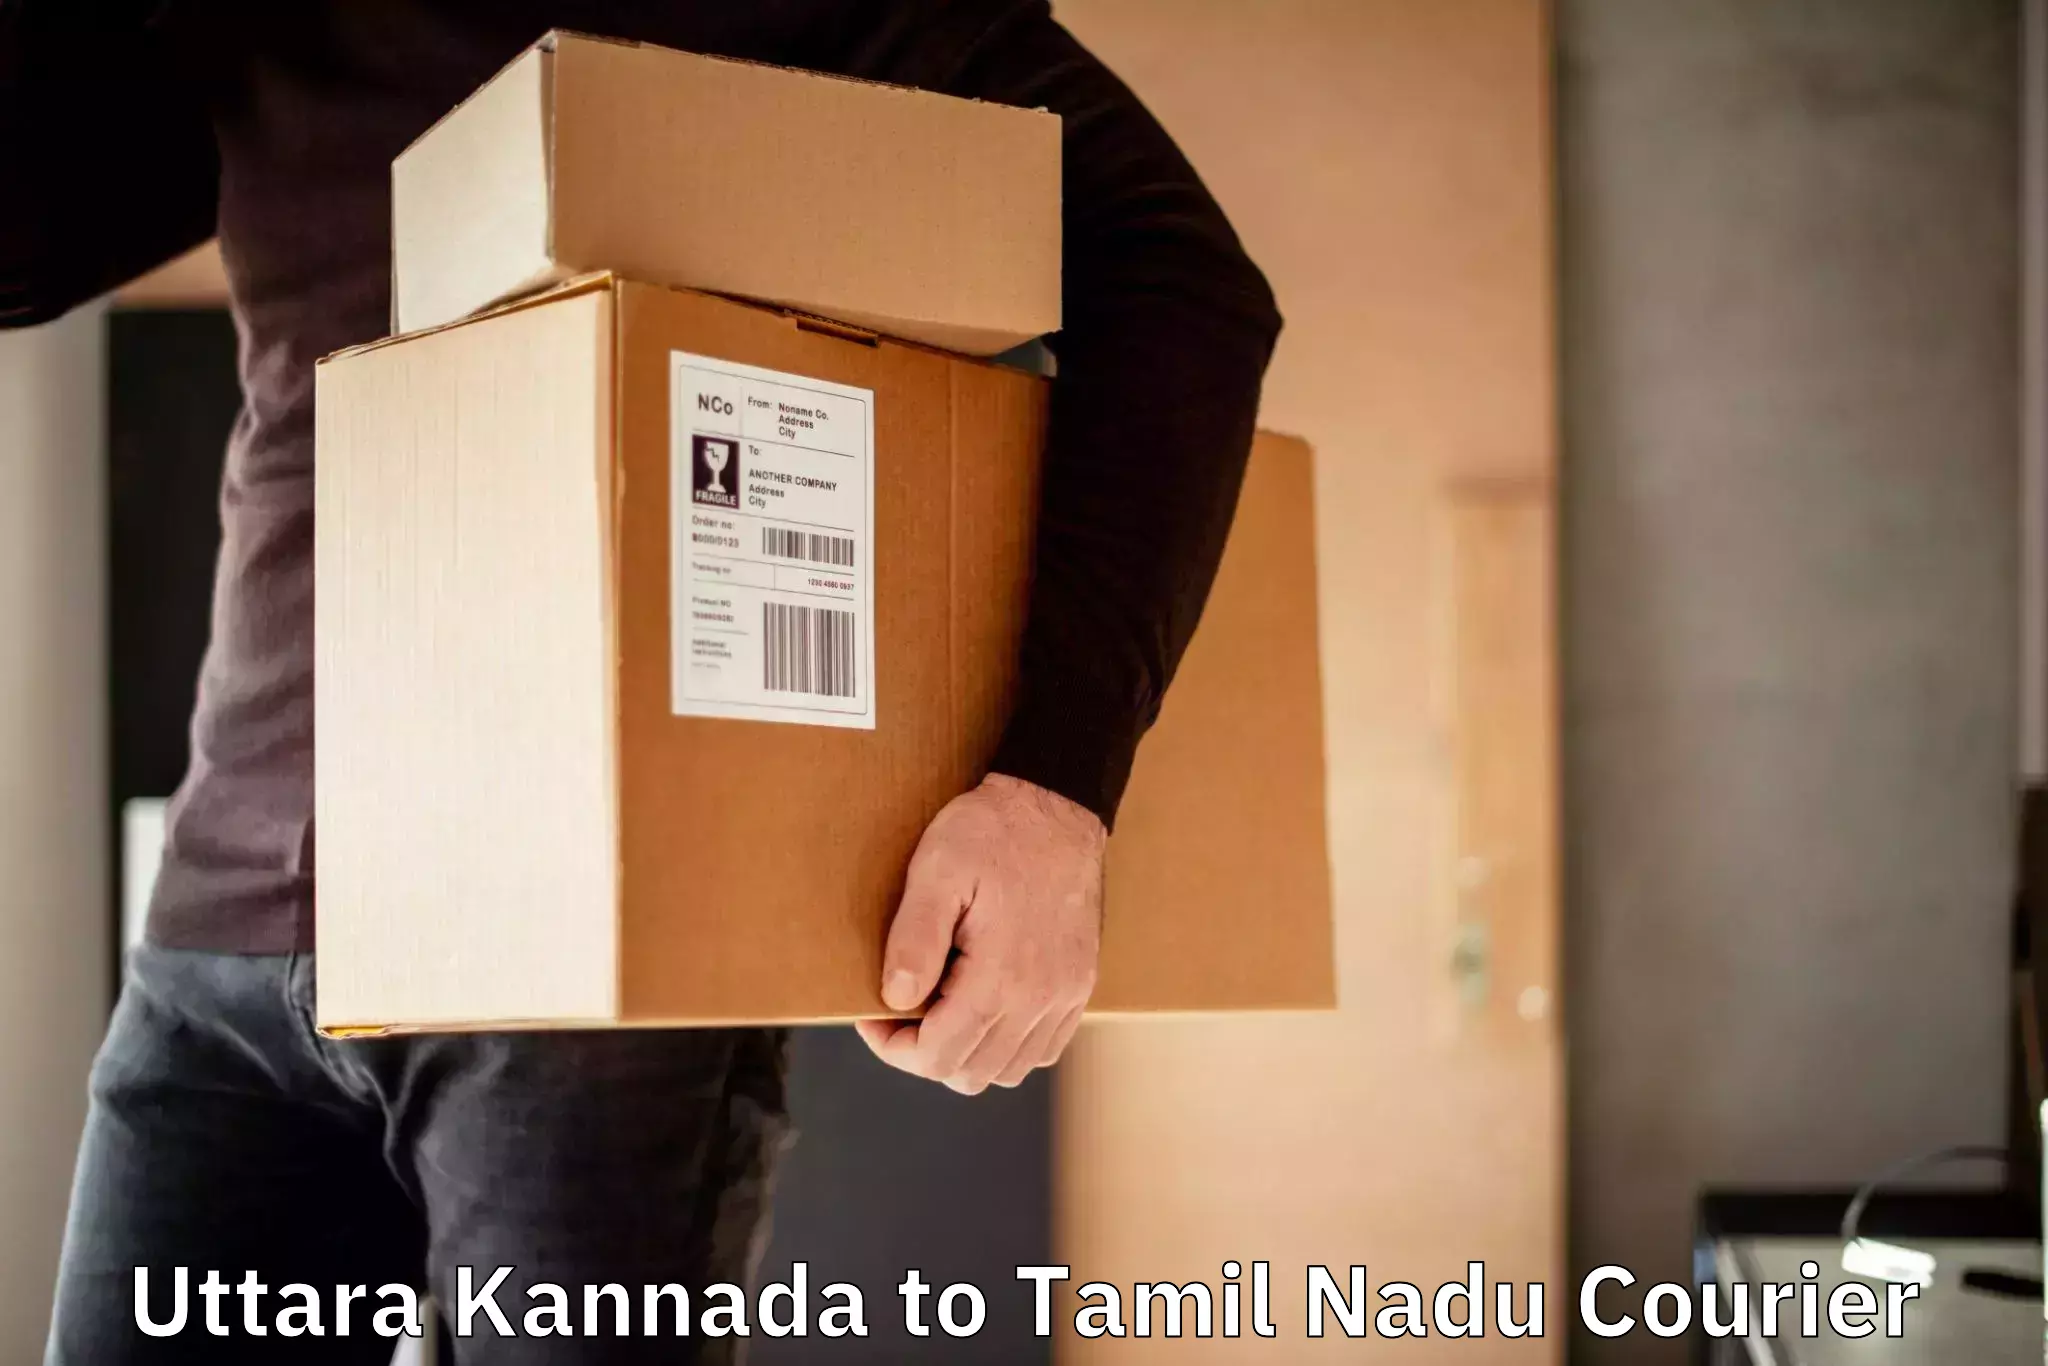 Lightweight courier Uttara Kannada to Sattur